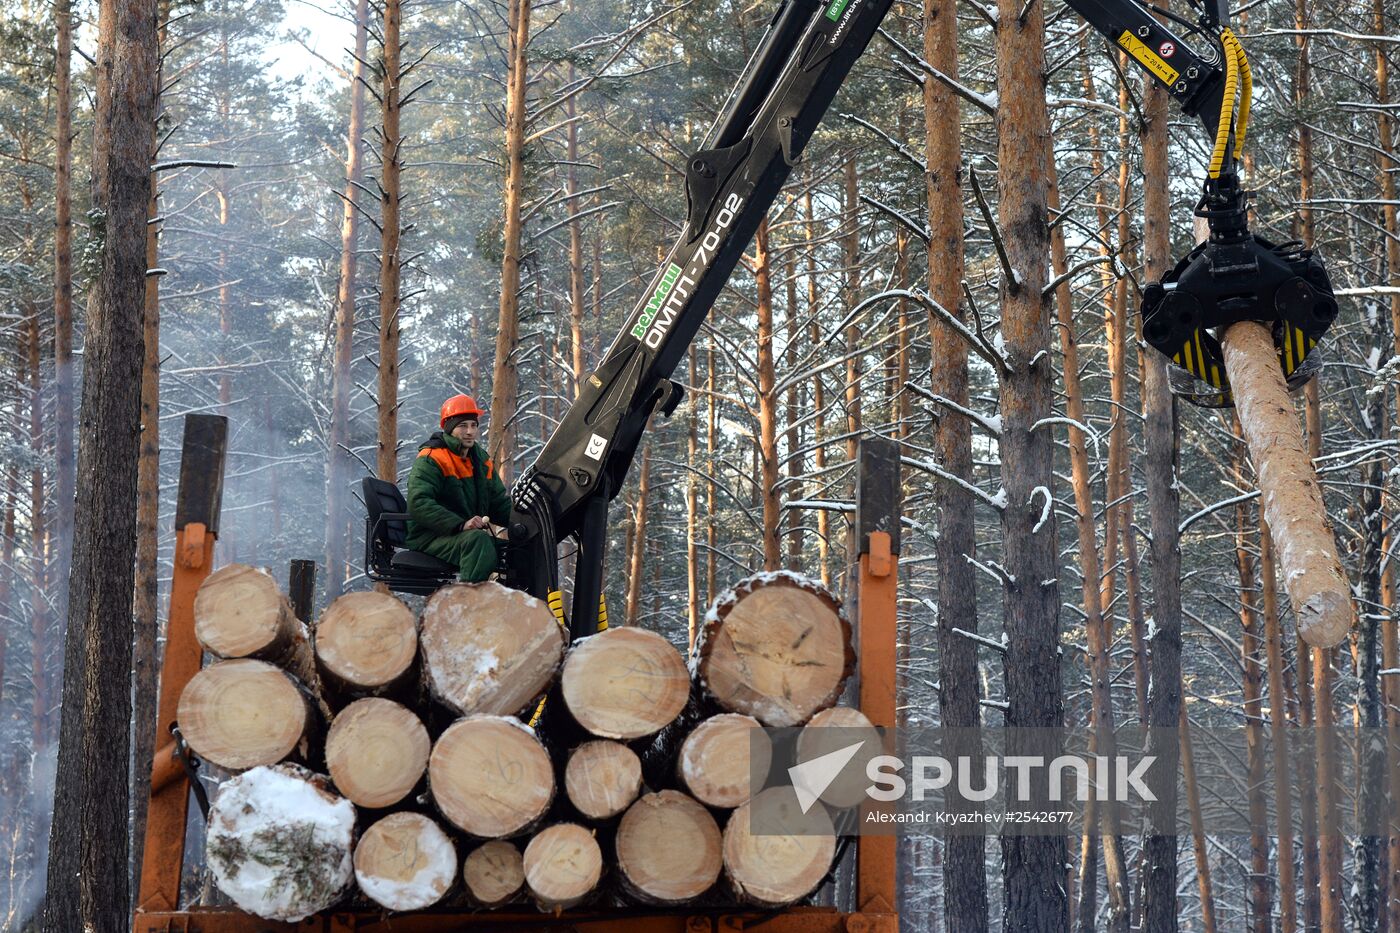 Logging in Altai Territory